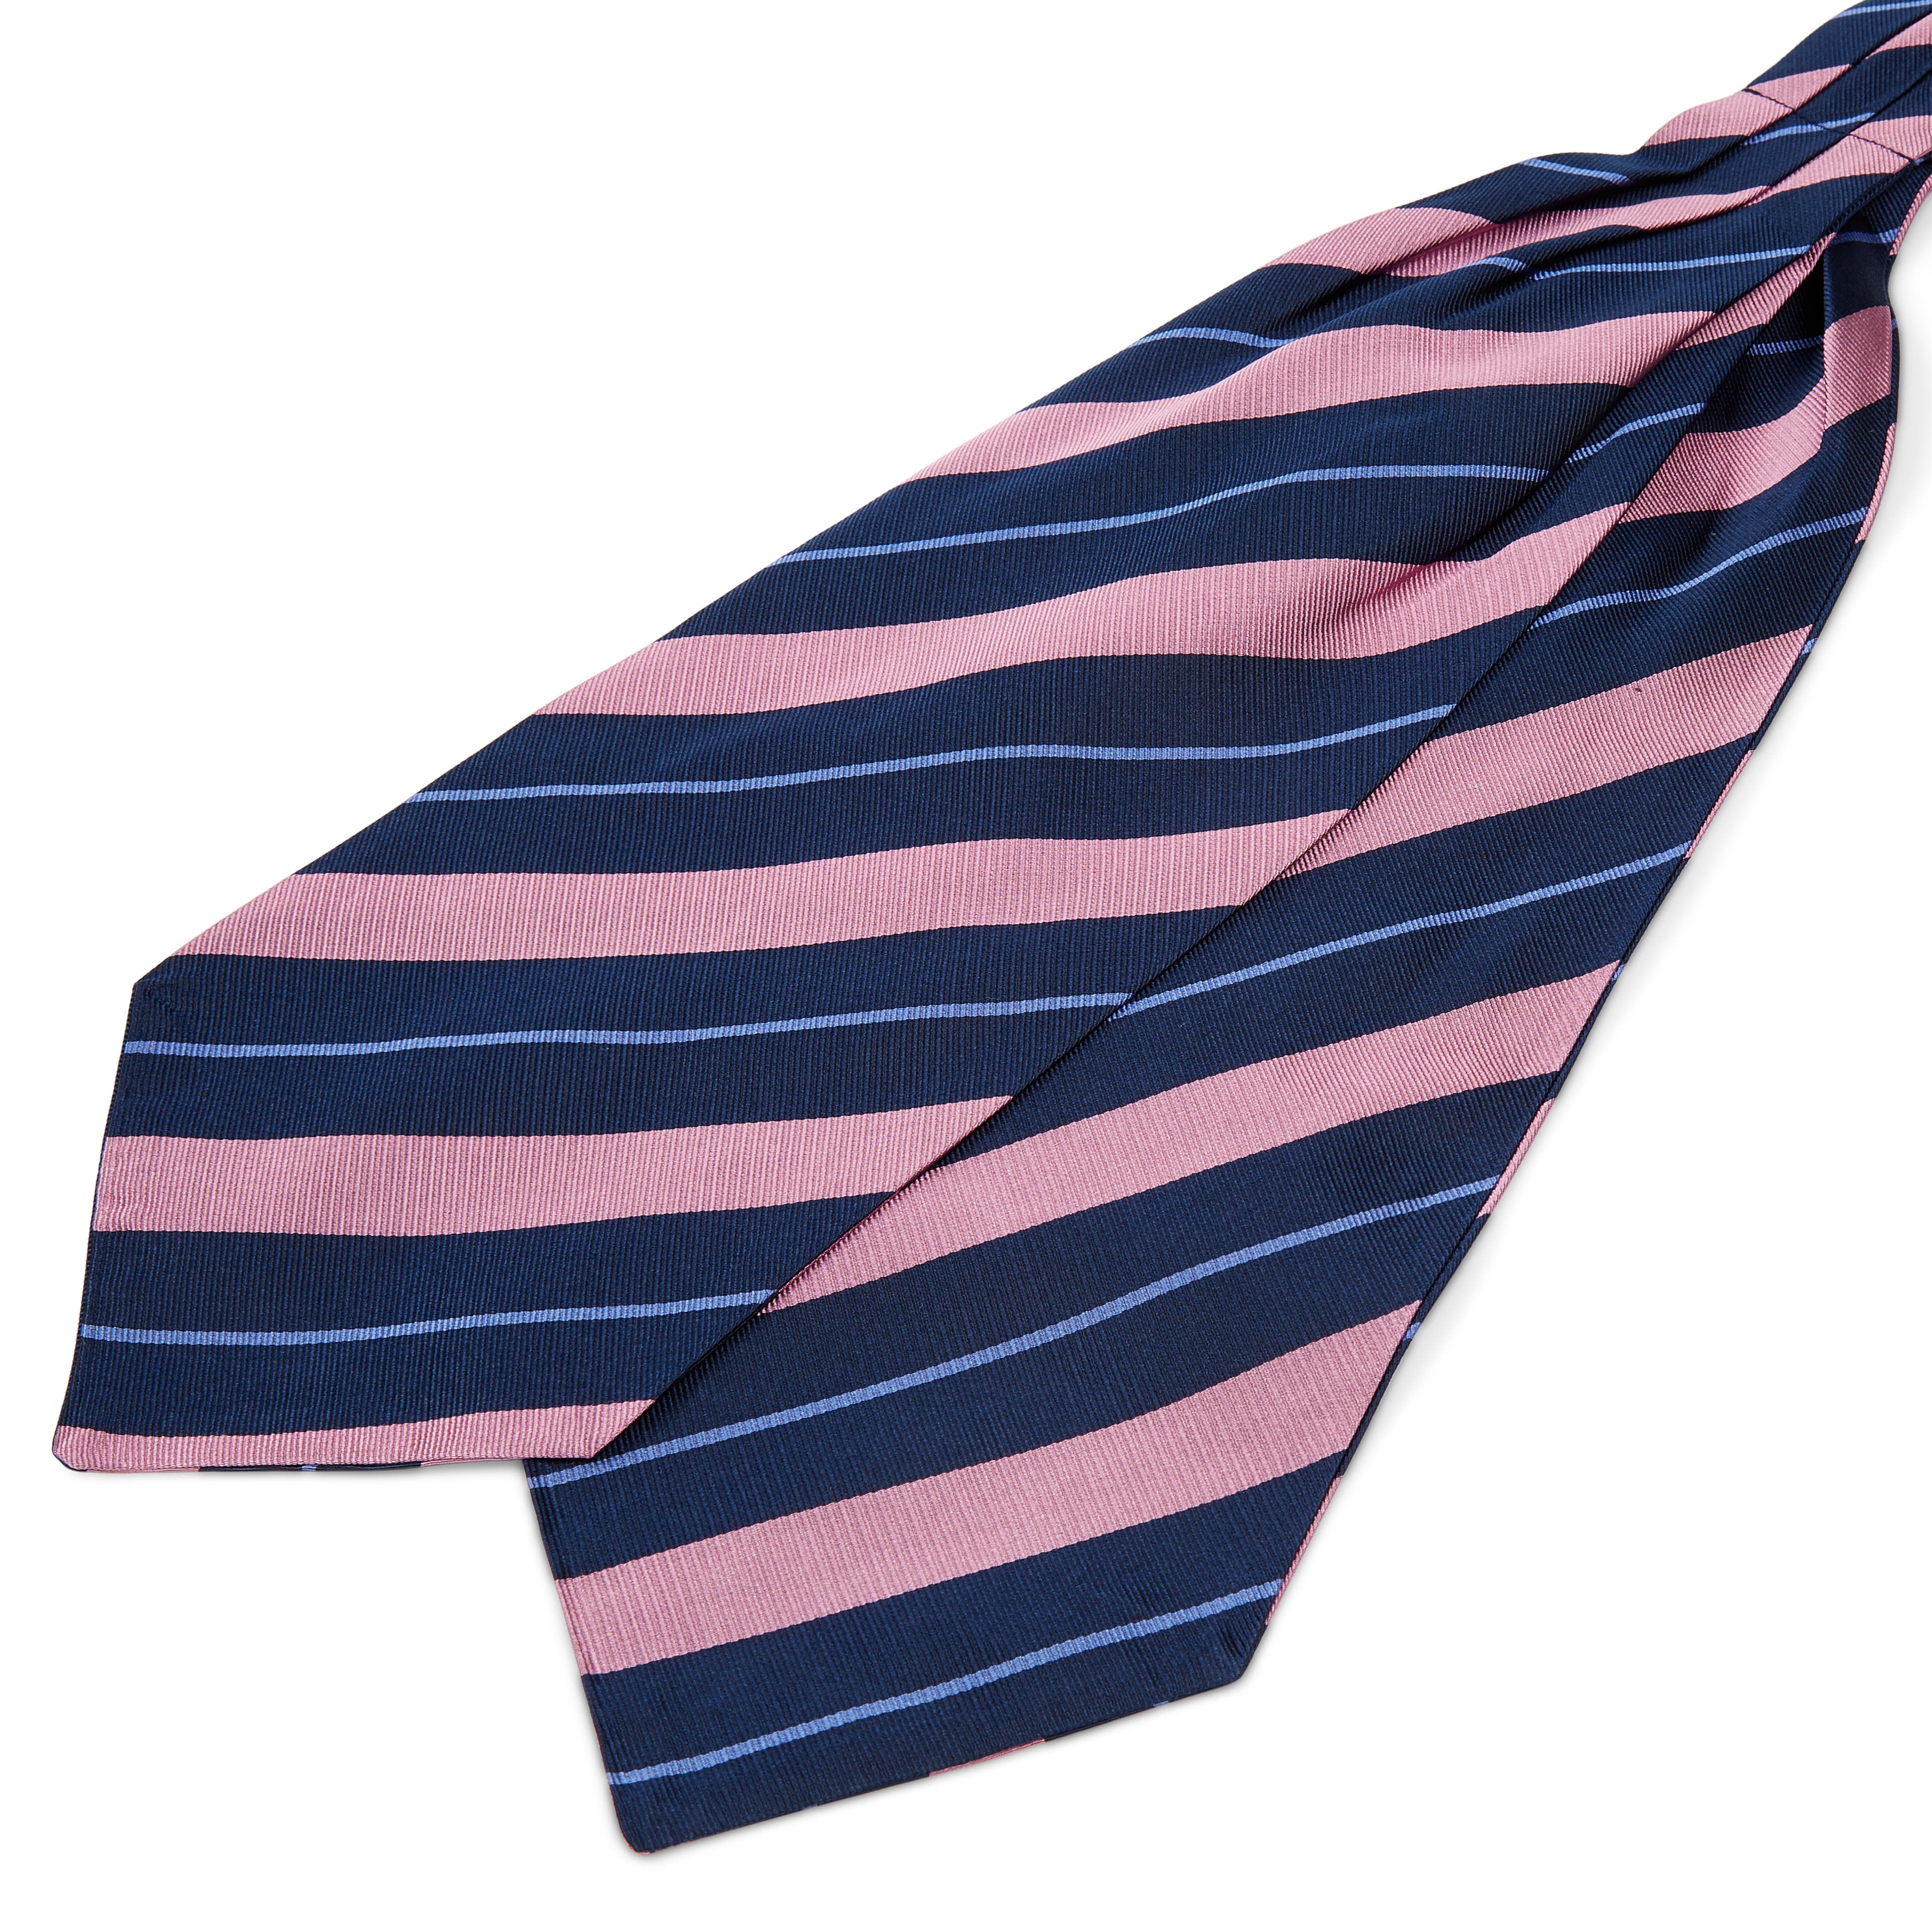 Cravatta ascot in seta blu navy con fantasia a righe rosa e azzurro